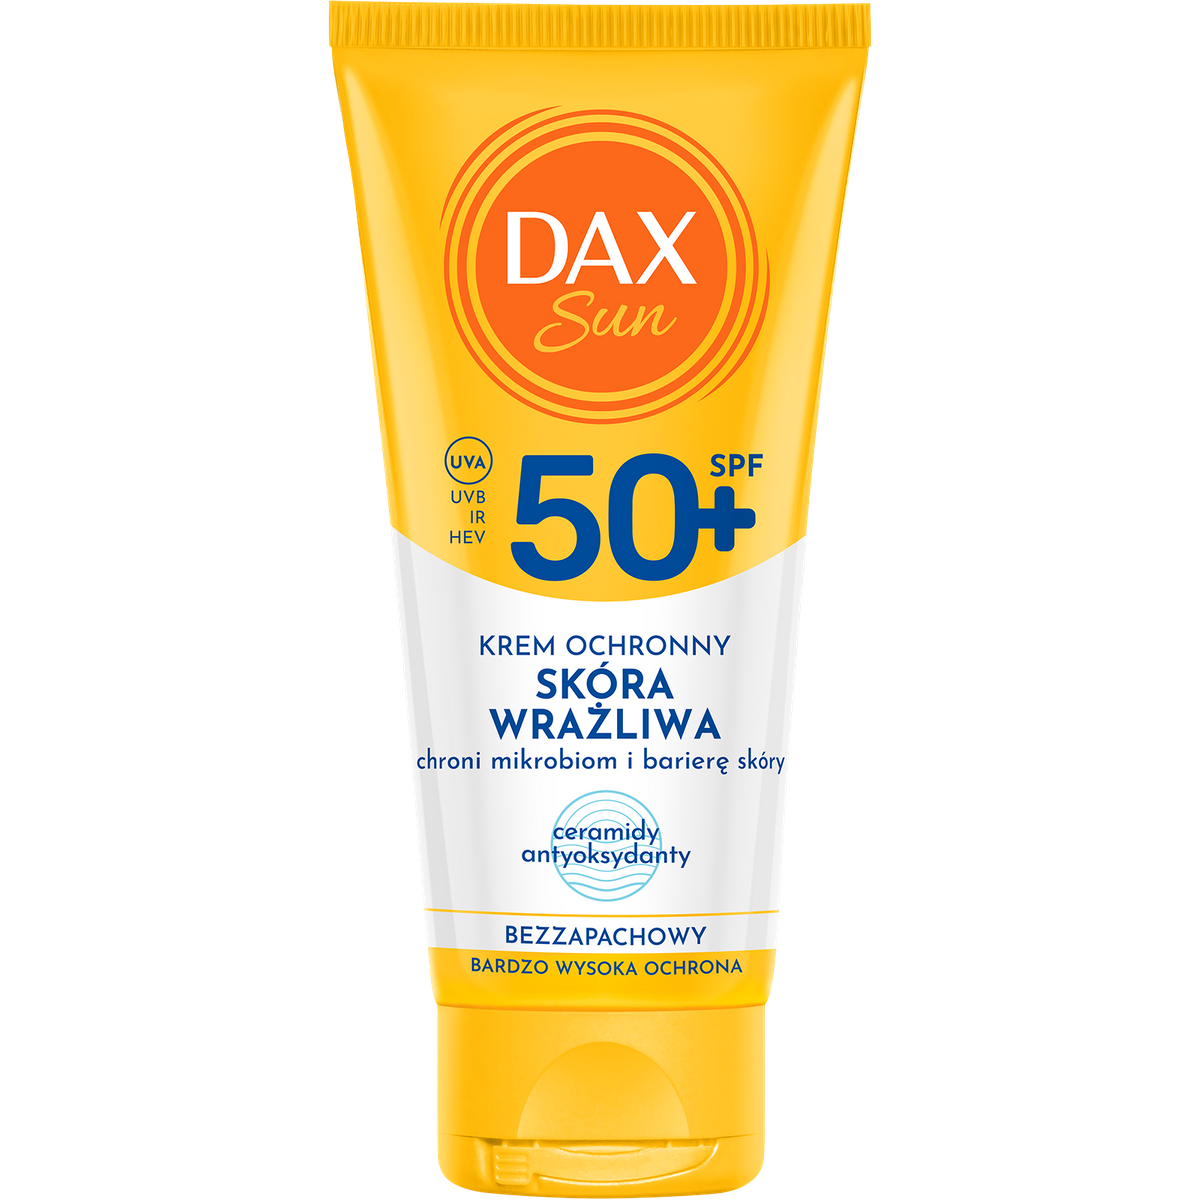 Dax Sun Krem ochronny do twarzy dla skóry wrażliwej SPF 50+